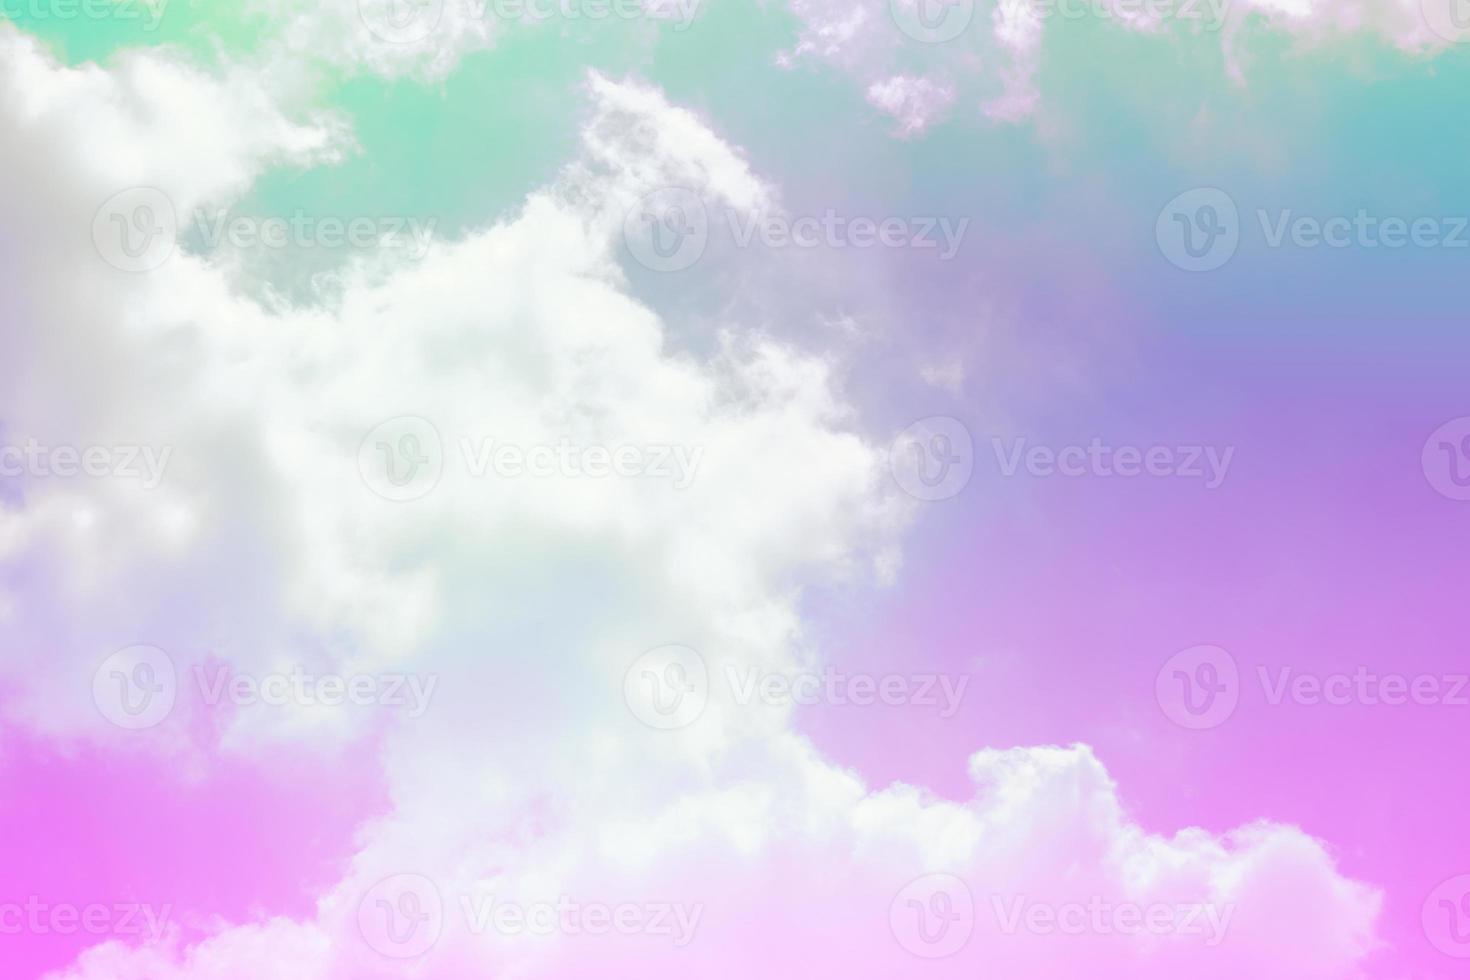 Schönheit süß lila grün bunt mit flauschigen Wolken am Himmel. mehrfarbiges Regenbogenbild. abstrakte Fantasie wachsendes Licht foto